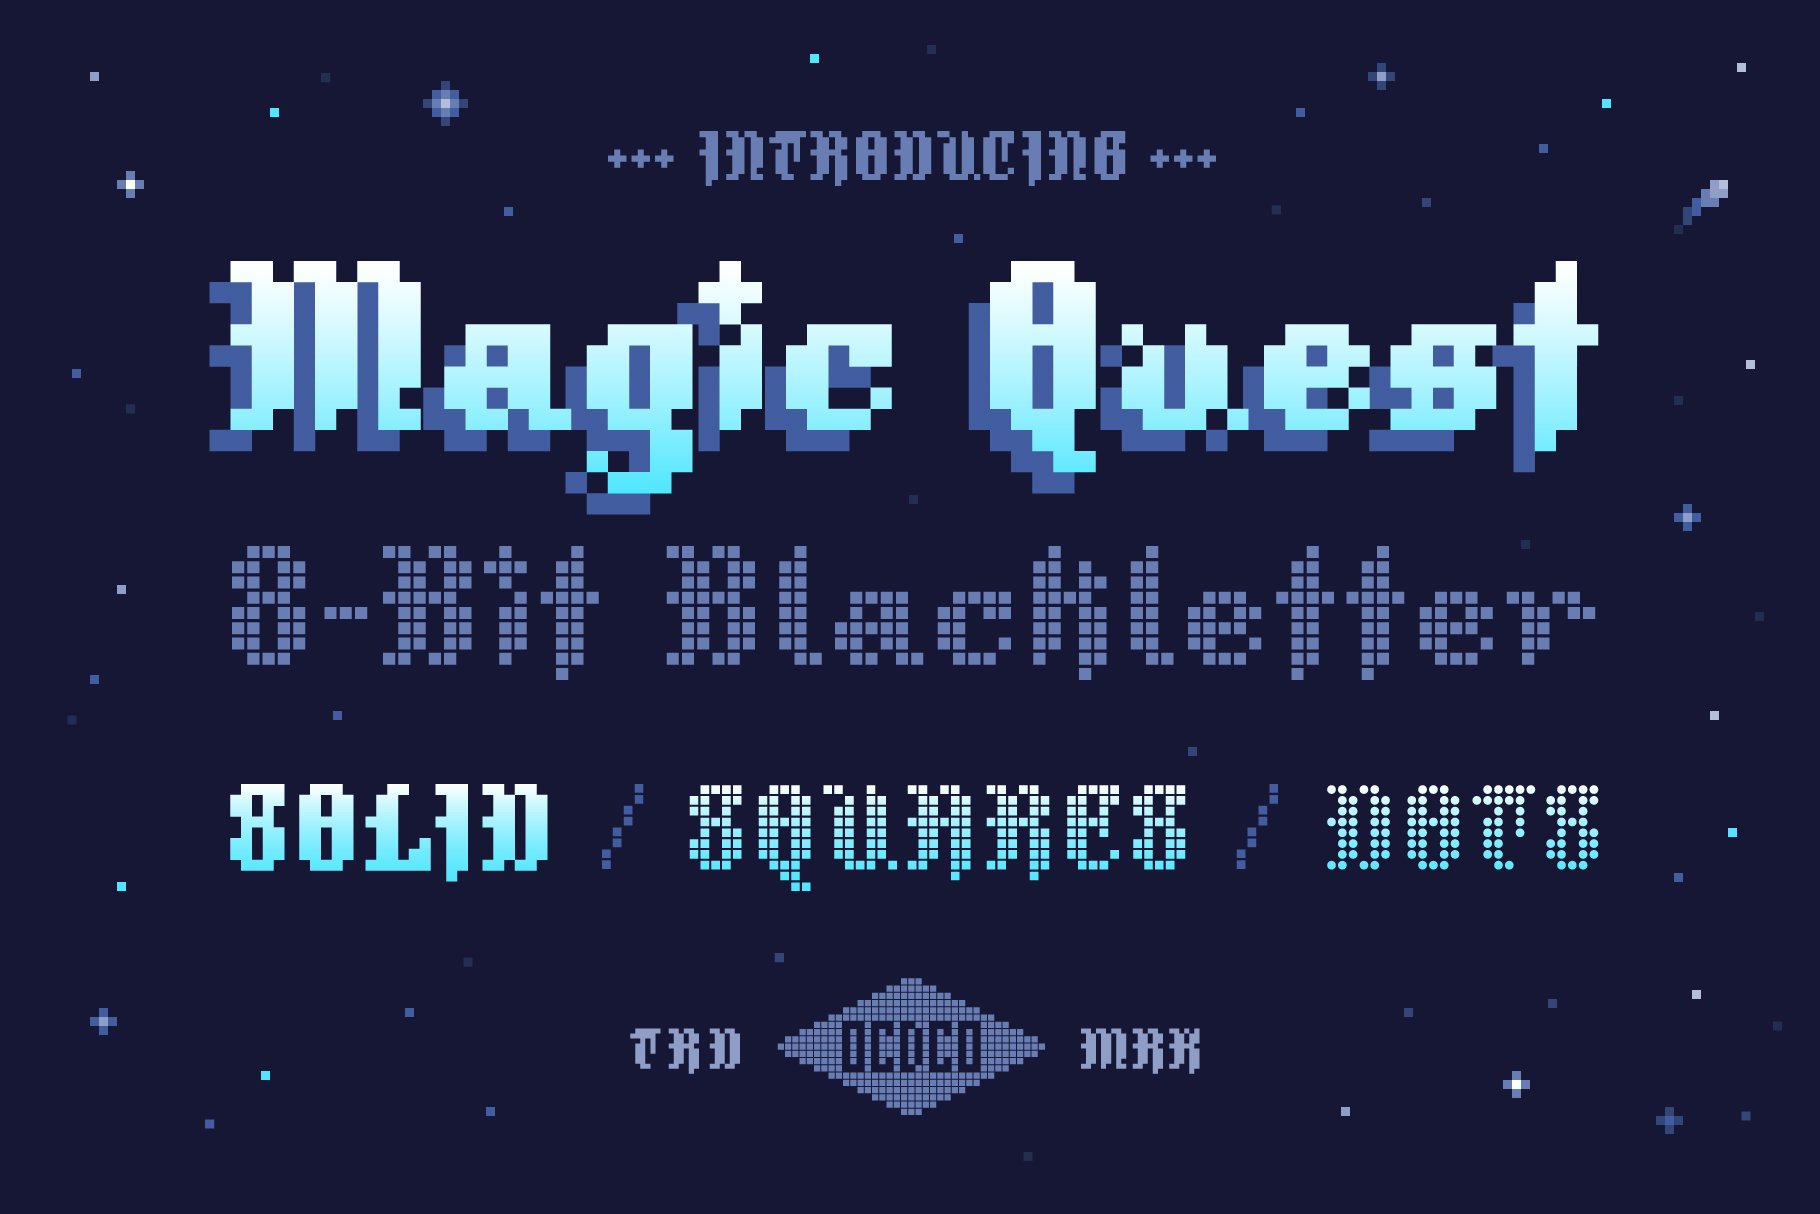 Magic Quest - 8-Bit Blackletter cover image.